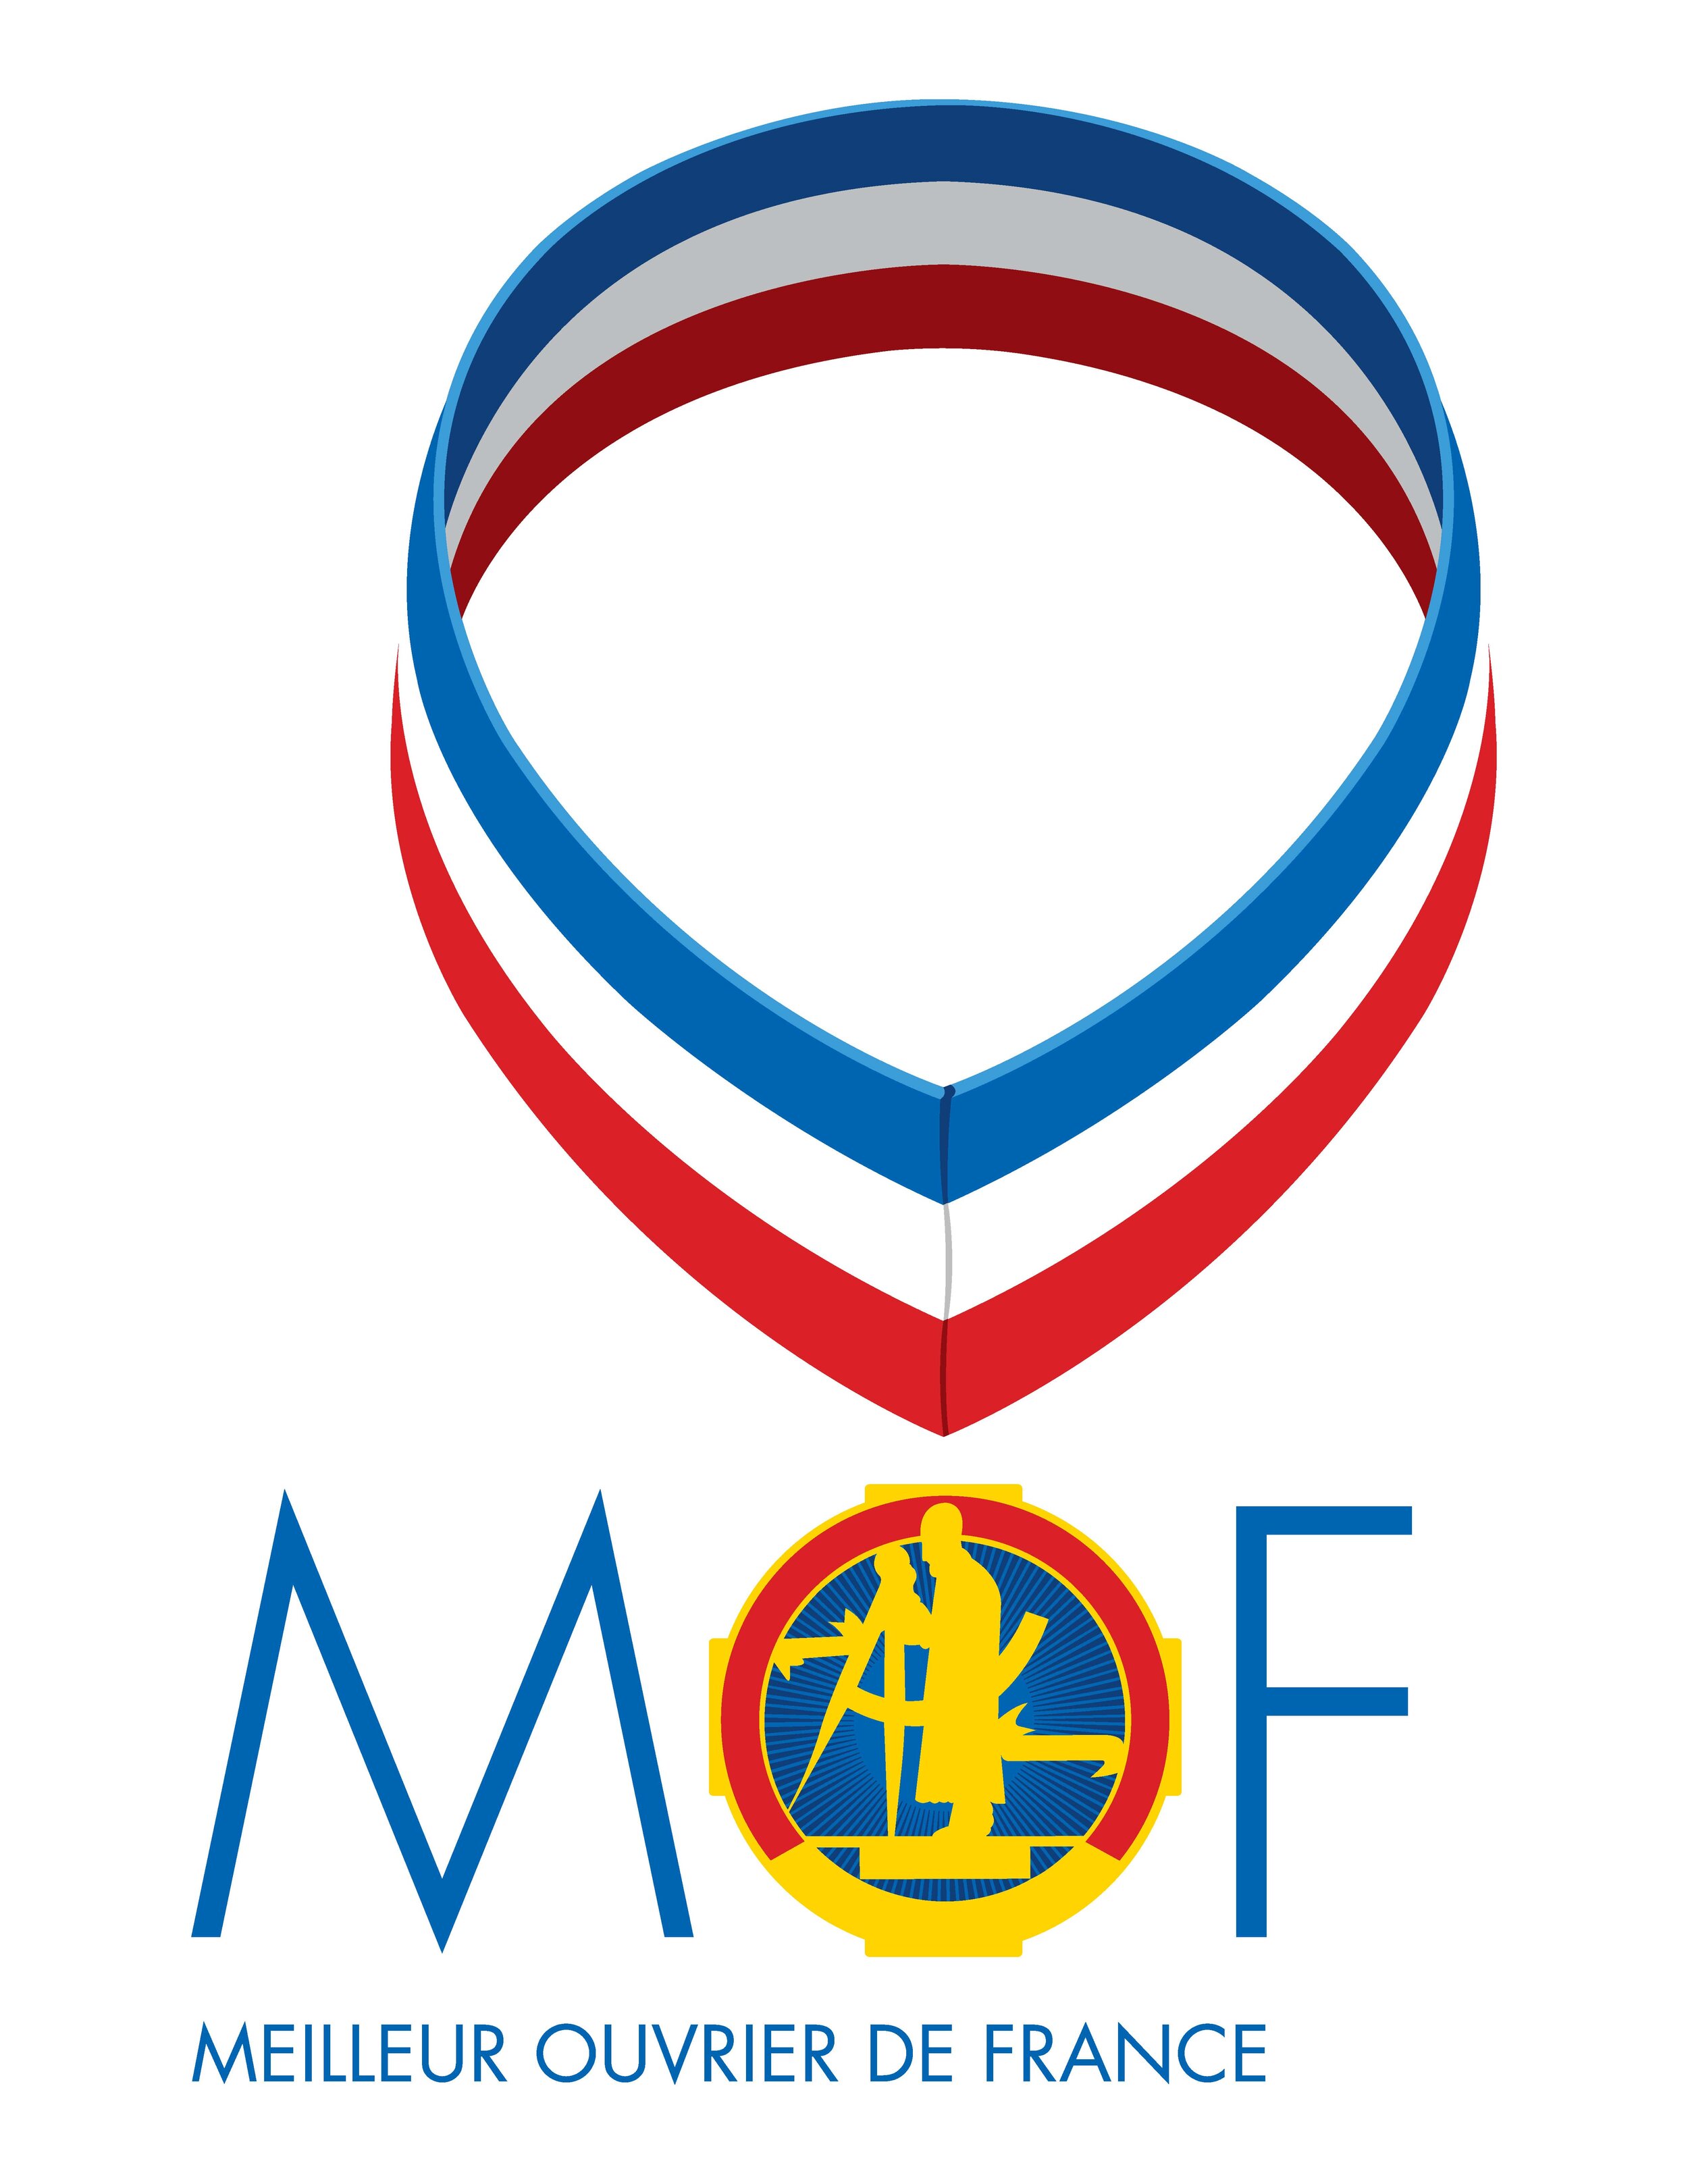 What is a Meilleur Ouvrier de France (MOF)?